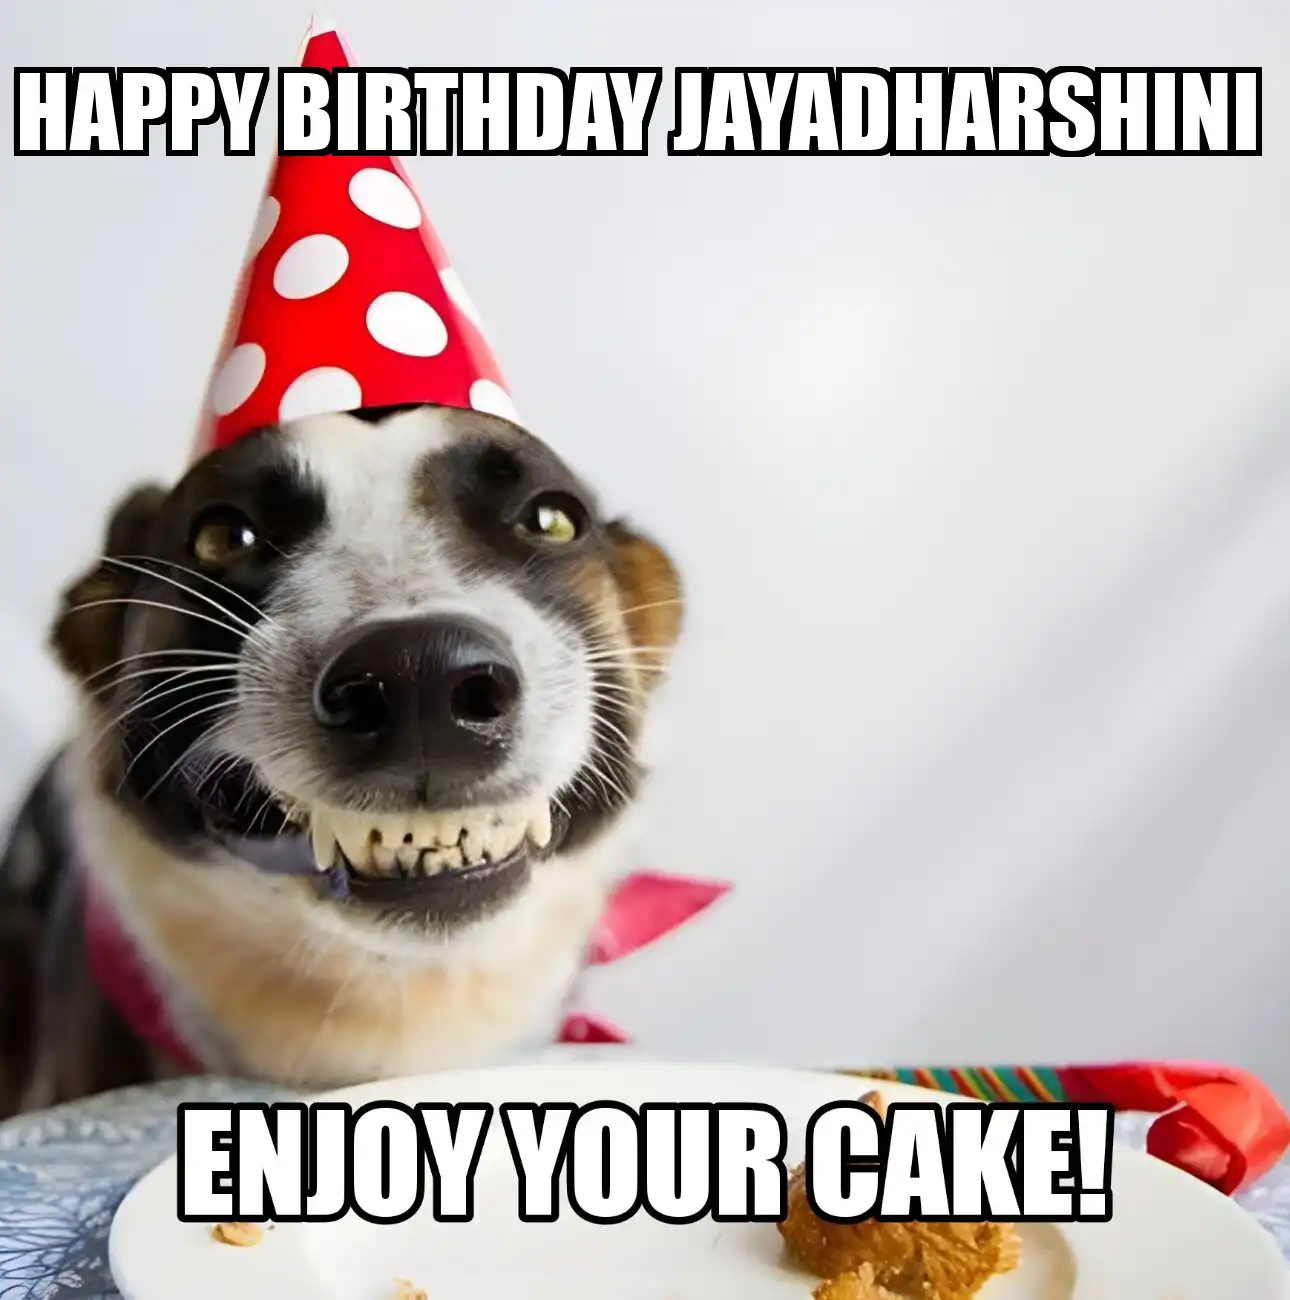 Happy Birthday Jayadharshini Enjoy Your Cake Dog Meme